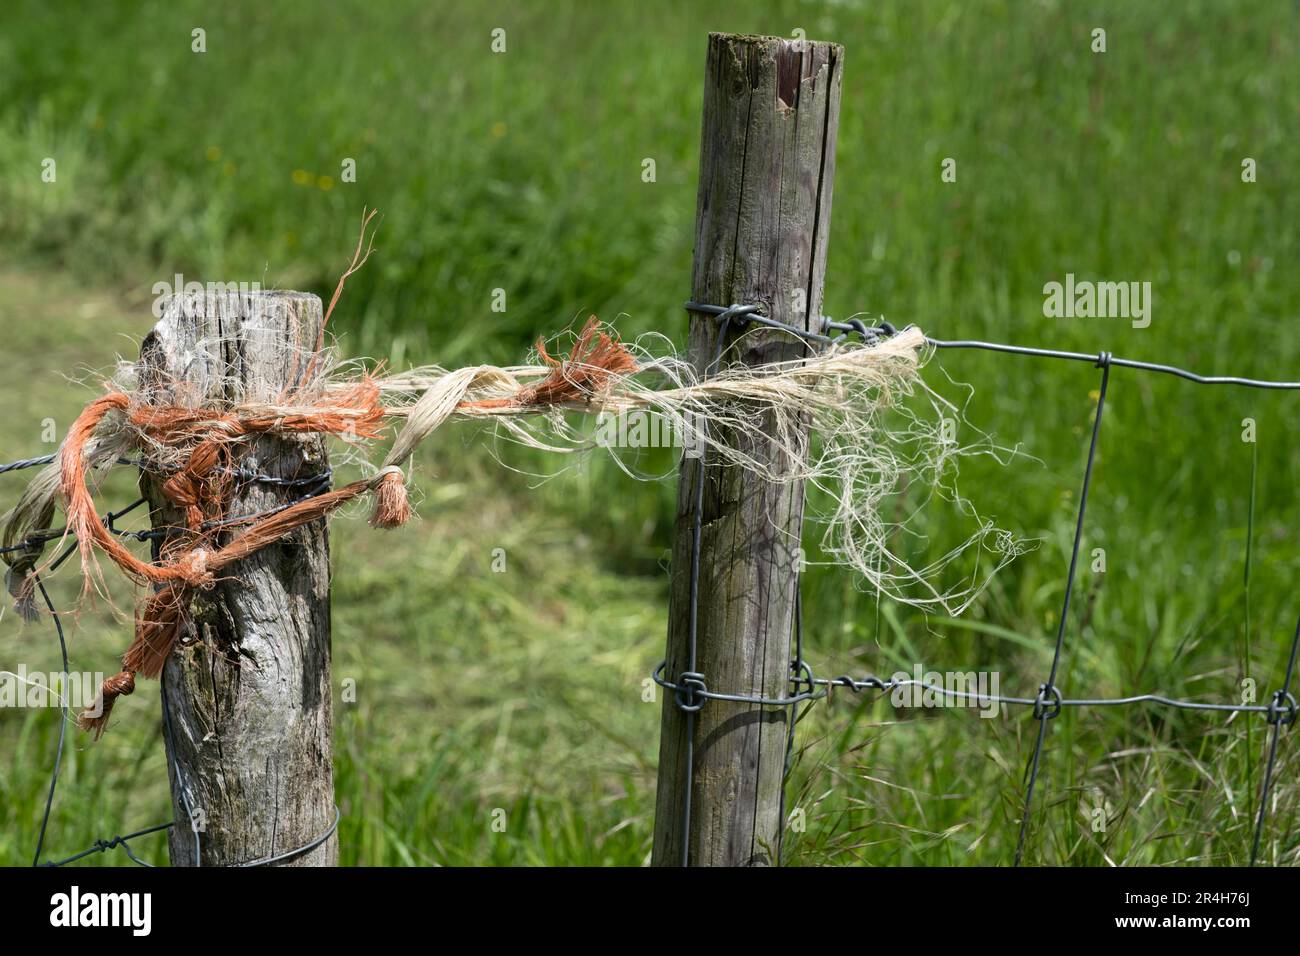 Drahtzäune auf einer Weide mit zwei verwitterten Holzpfosten, die an den Enden durch ein Seil zusammengehalten werden. Sieht nicht so robust aus Stockfoto